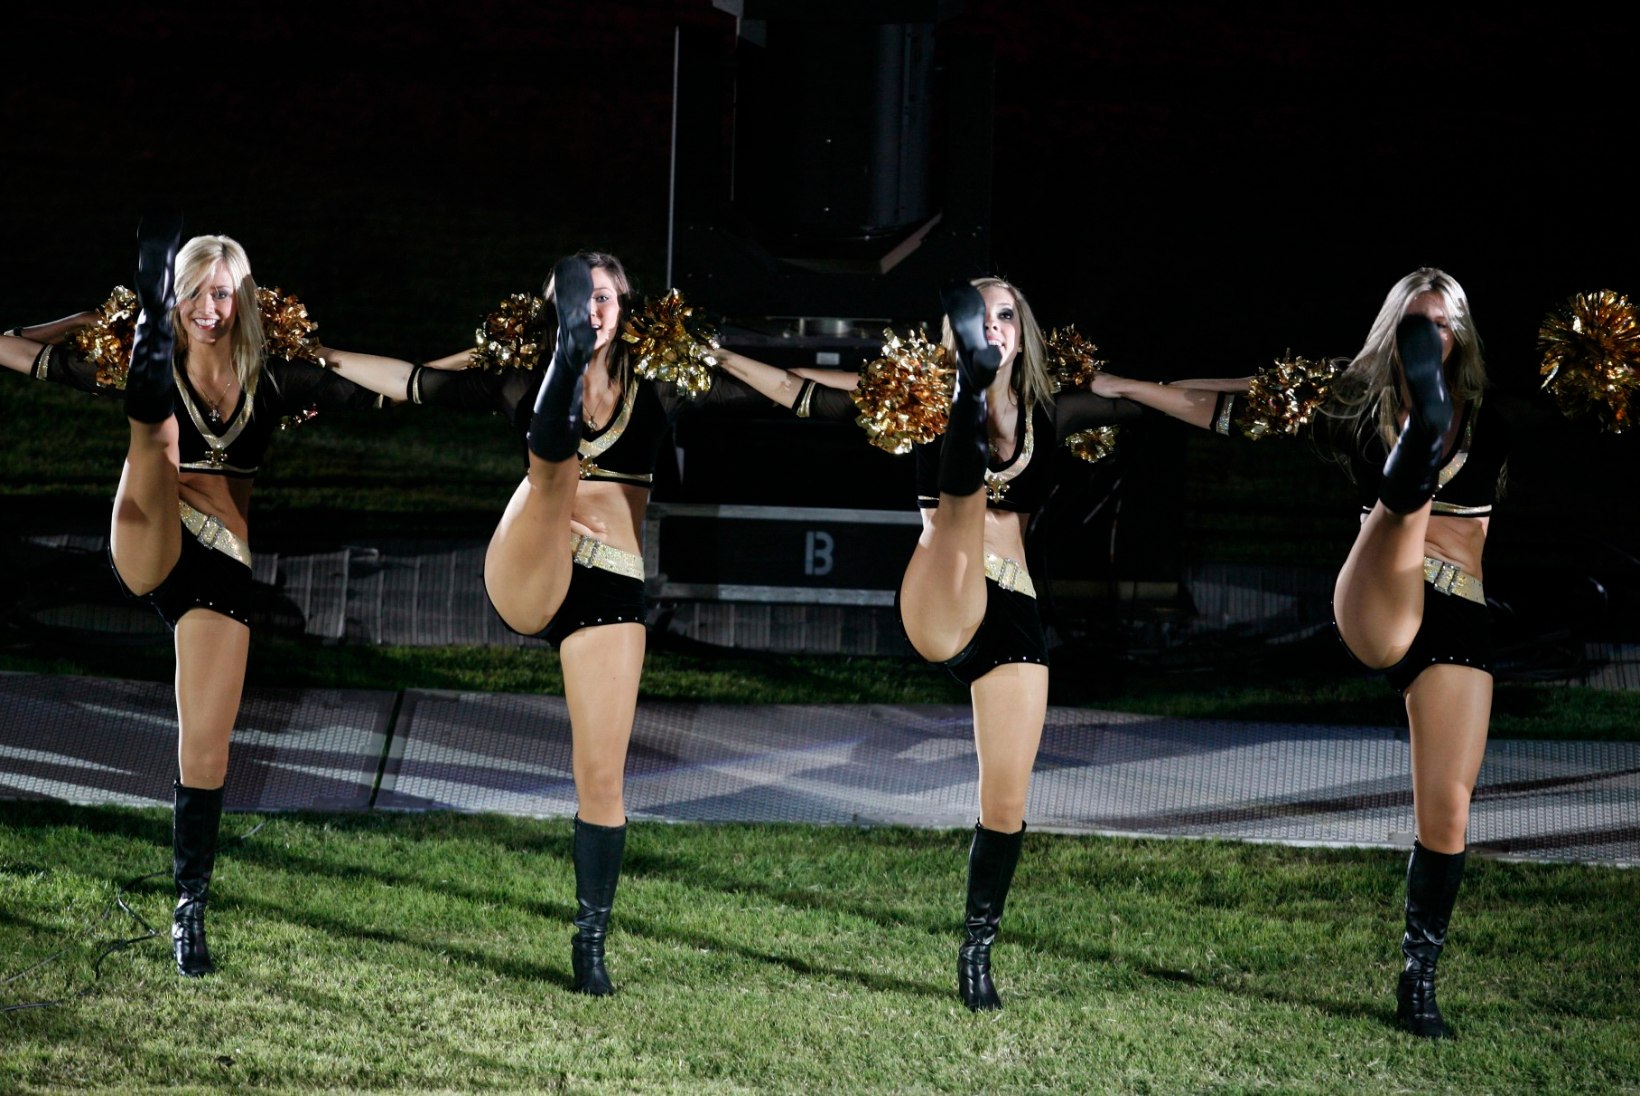 GALERII | Seksikad pühakud ehk NFLi tiimi New Orleans Saints tantsutüdrukud